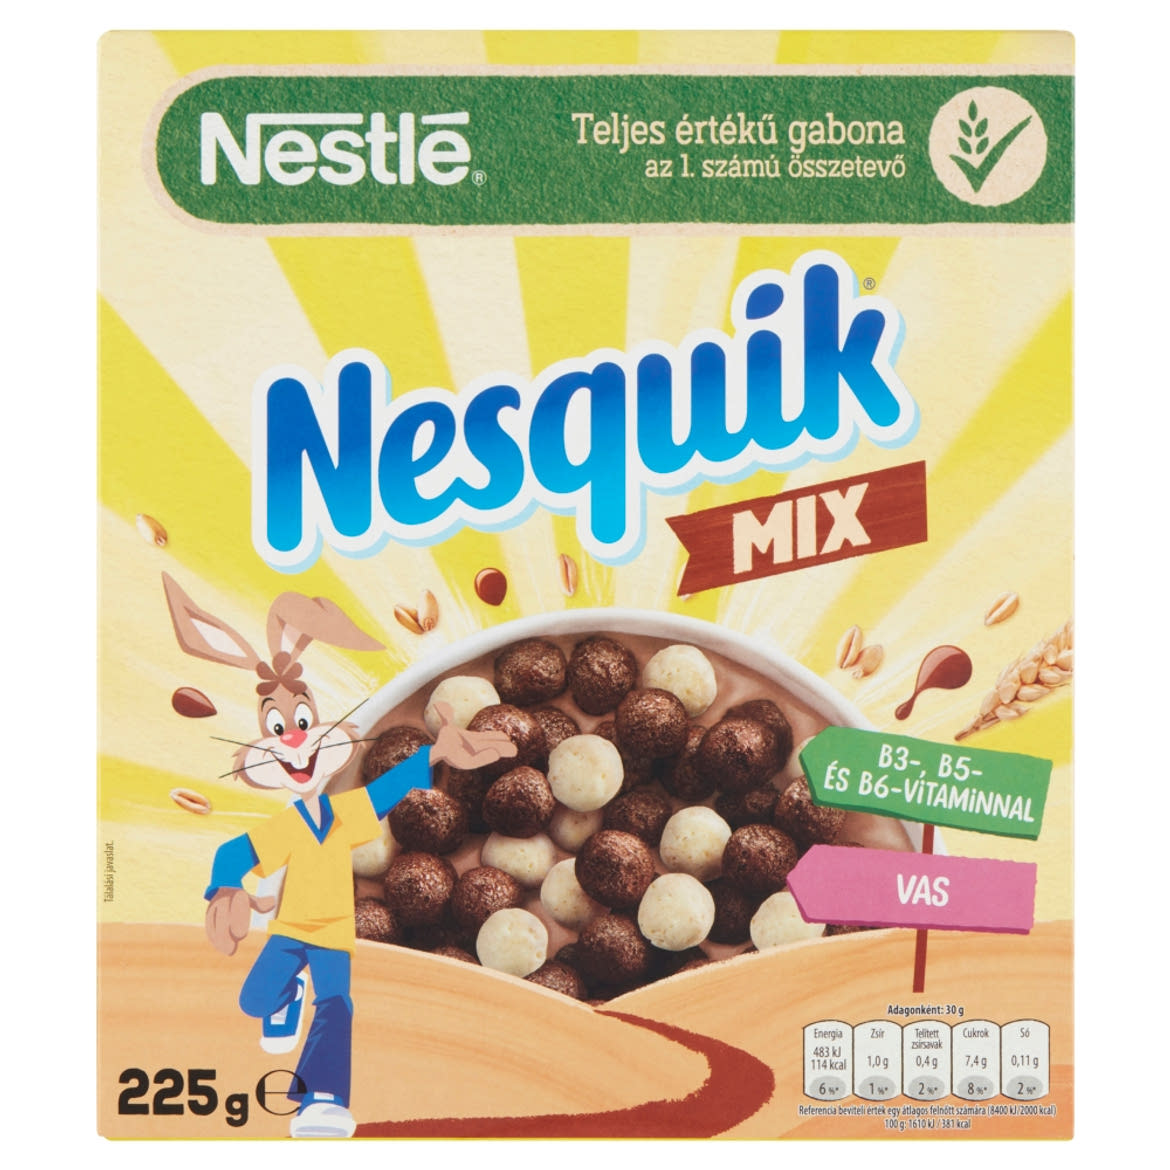 Nesquik Mix kakaós és vaníliaízű, ropogós gabonapehely vitaminokkal, ásványi anyagokkal